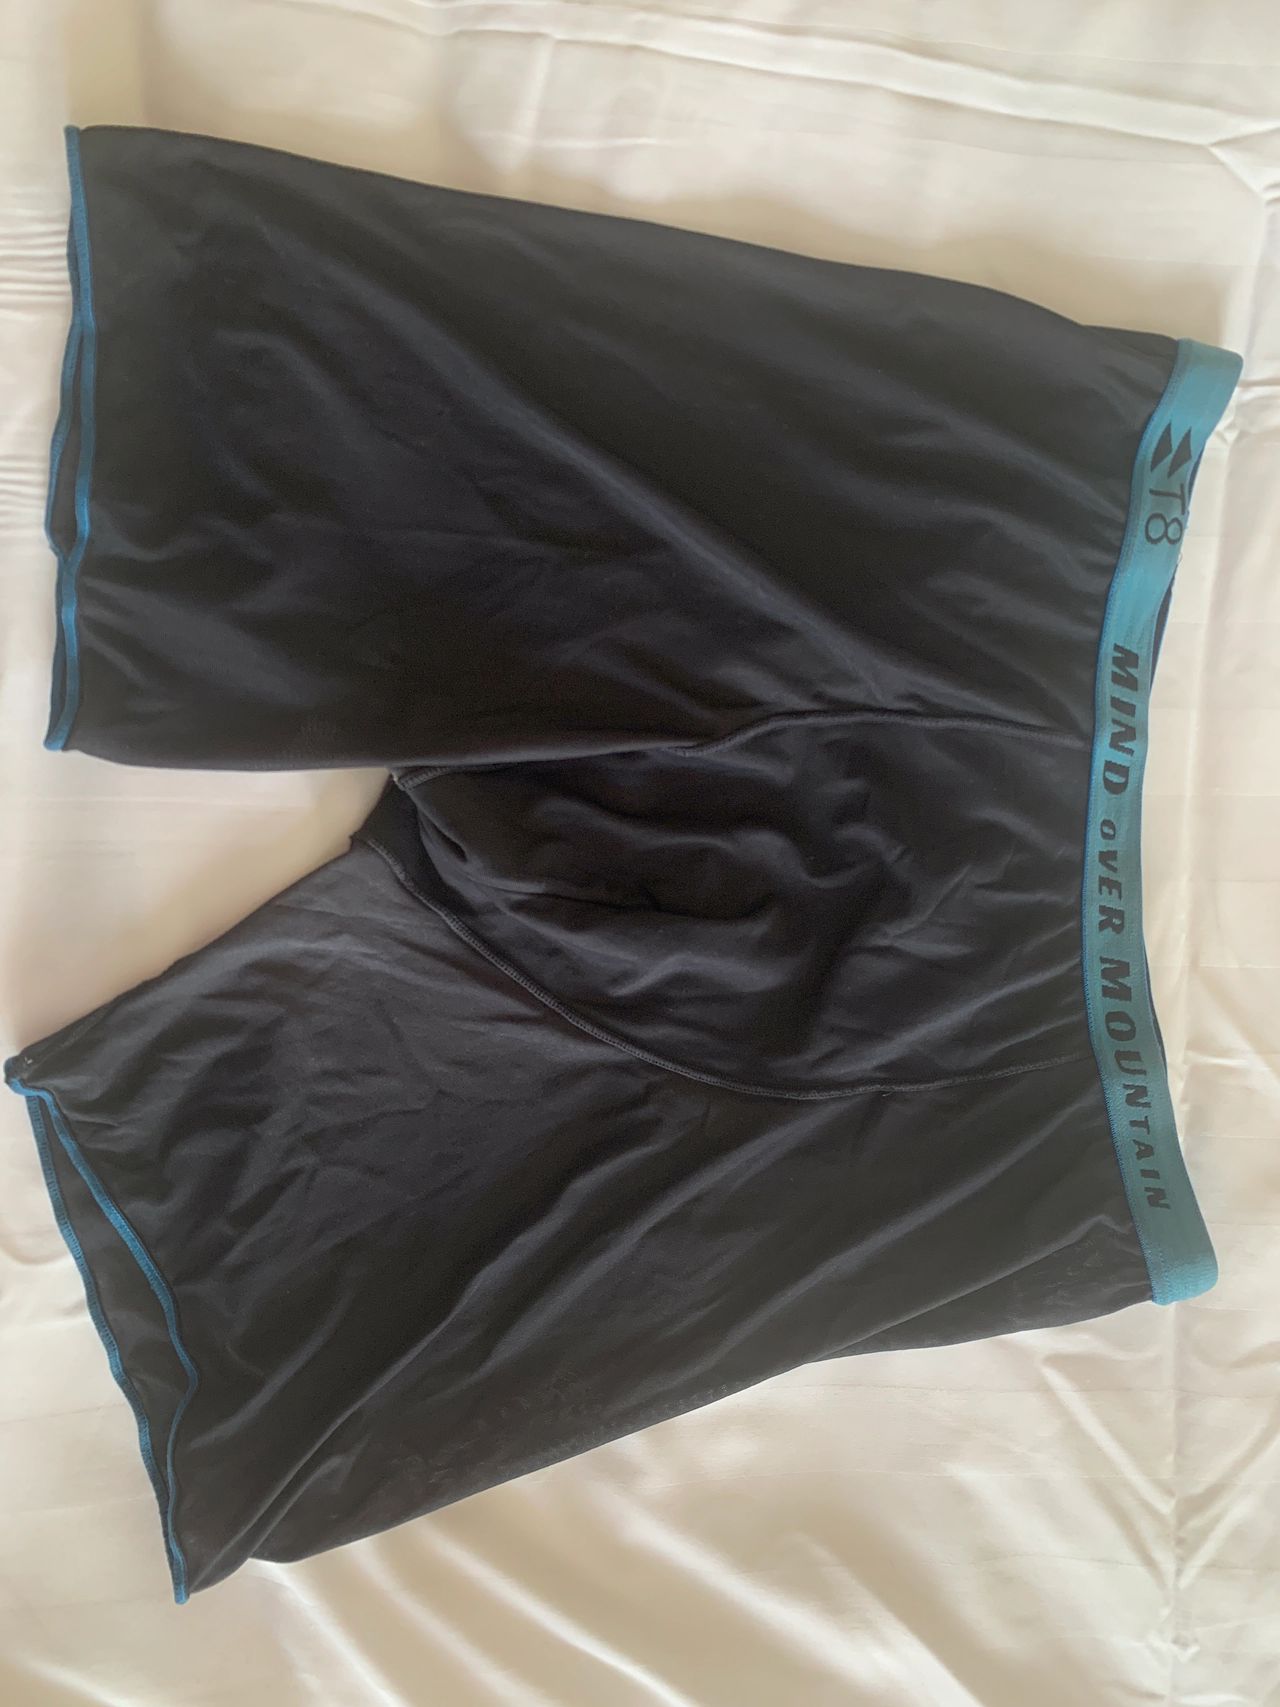 Review: T8 Commando underwear